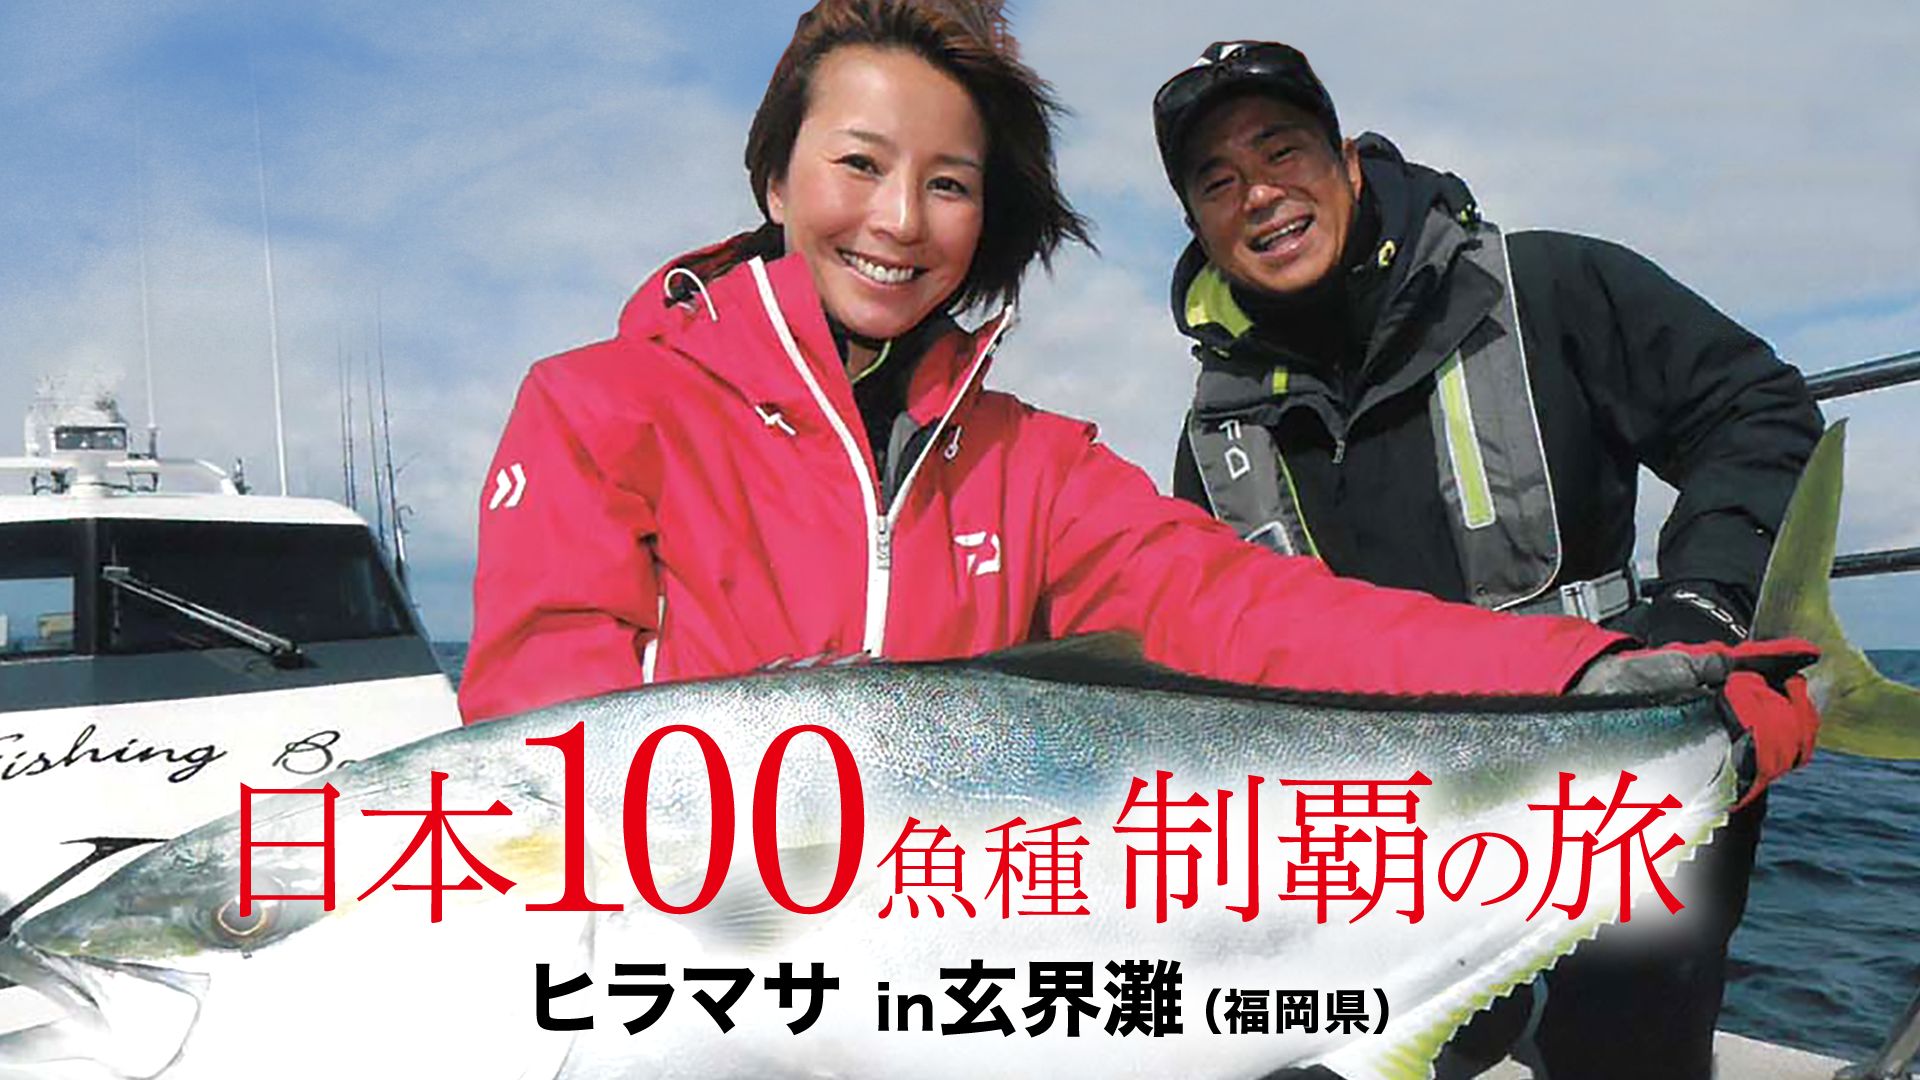 日本100魚種制覇の旅 ヒラマサ in玄界灘(福岡県)